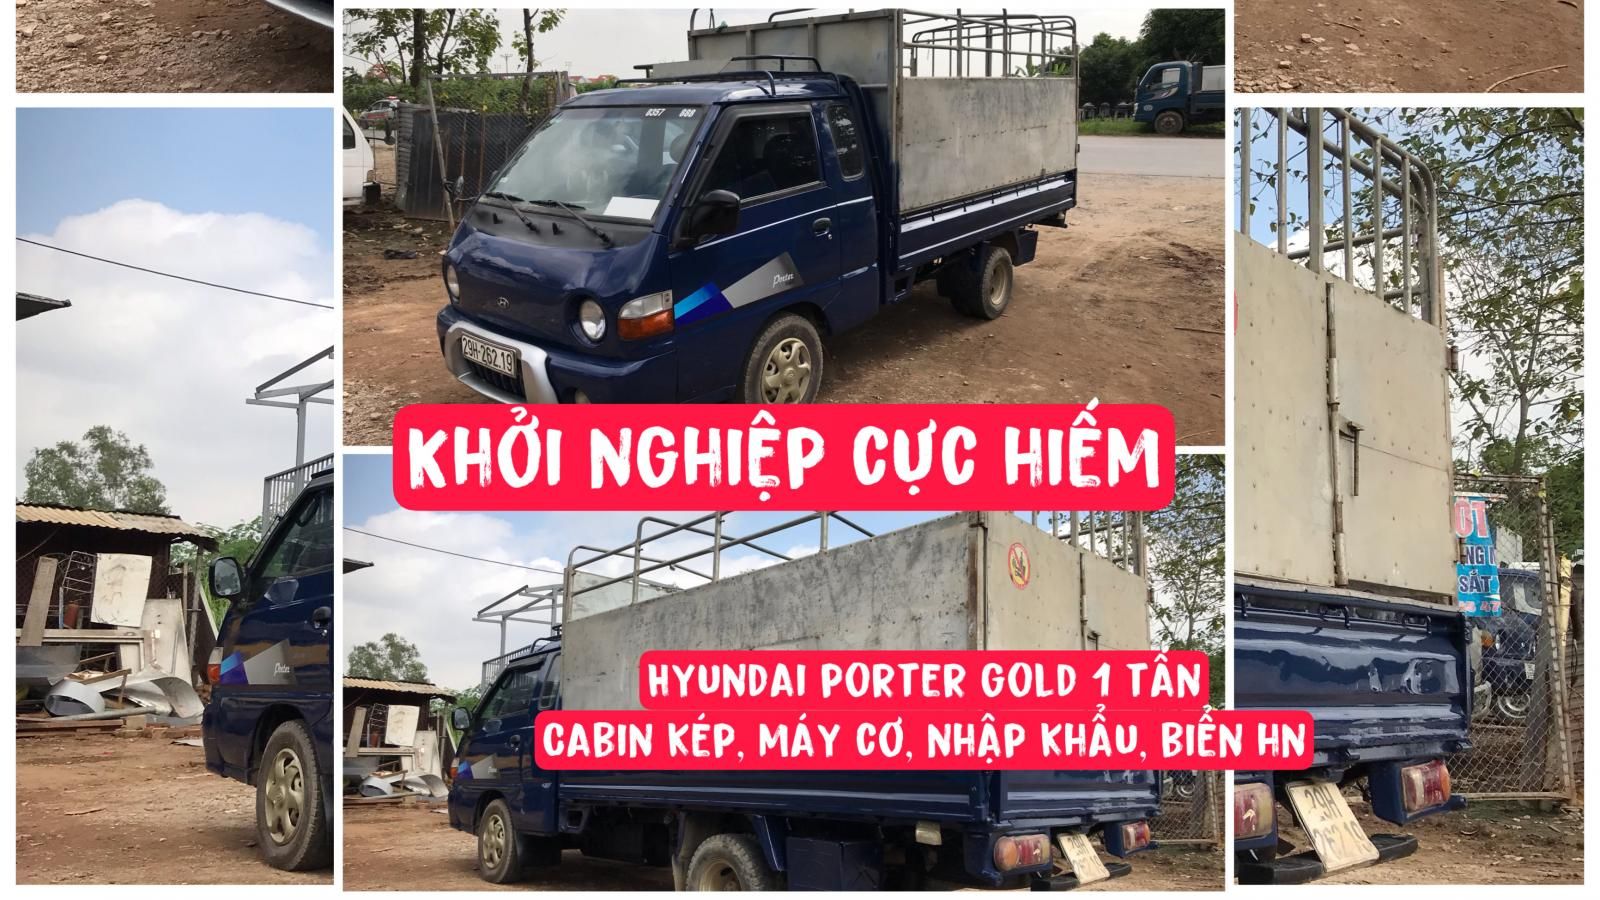 Hyundai Porter 2003 - Hiếm Hyundai Porter Gold nhập khẩu 1 tấn Cabin kép Máy cơ biển Hà Nội